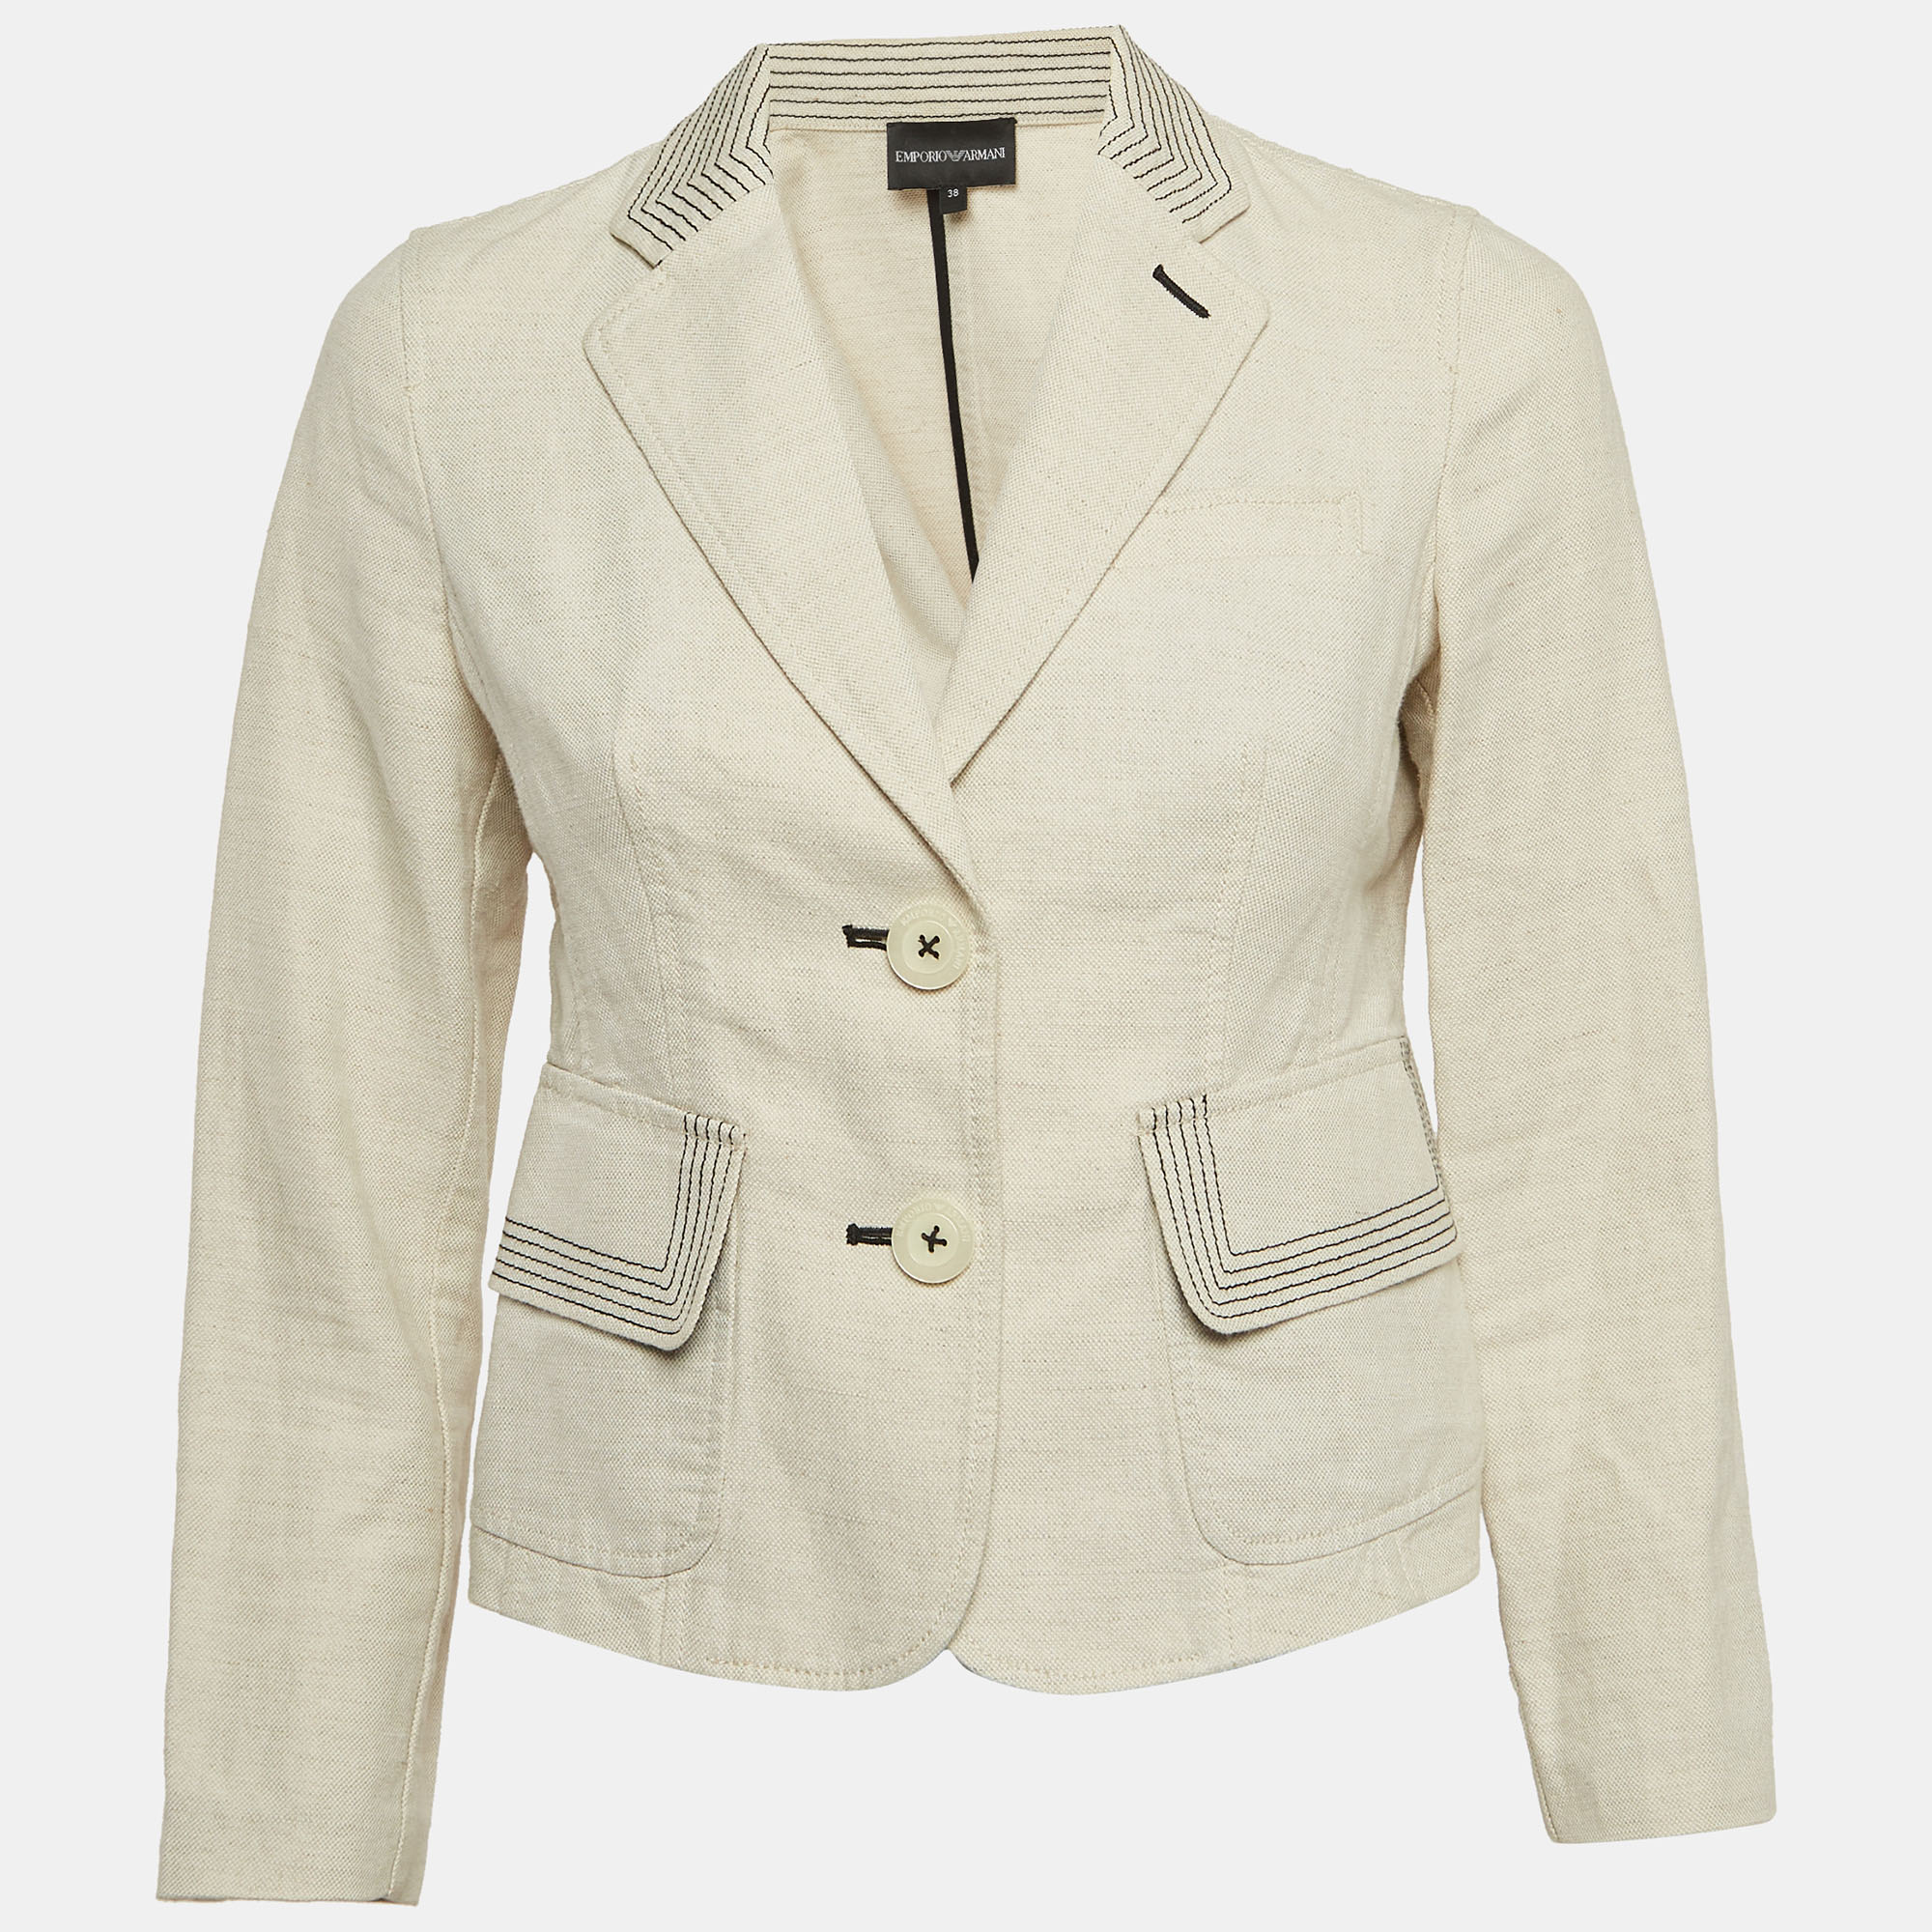 Emporio armani cream contrast stitch cotton blend single breasted blazer s